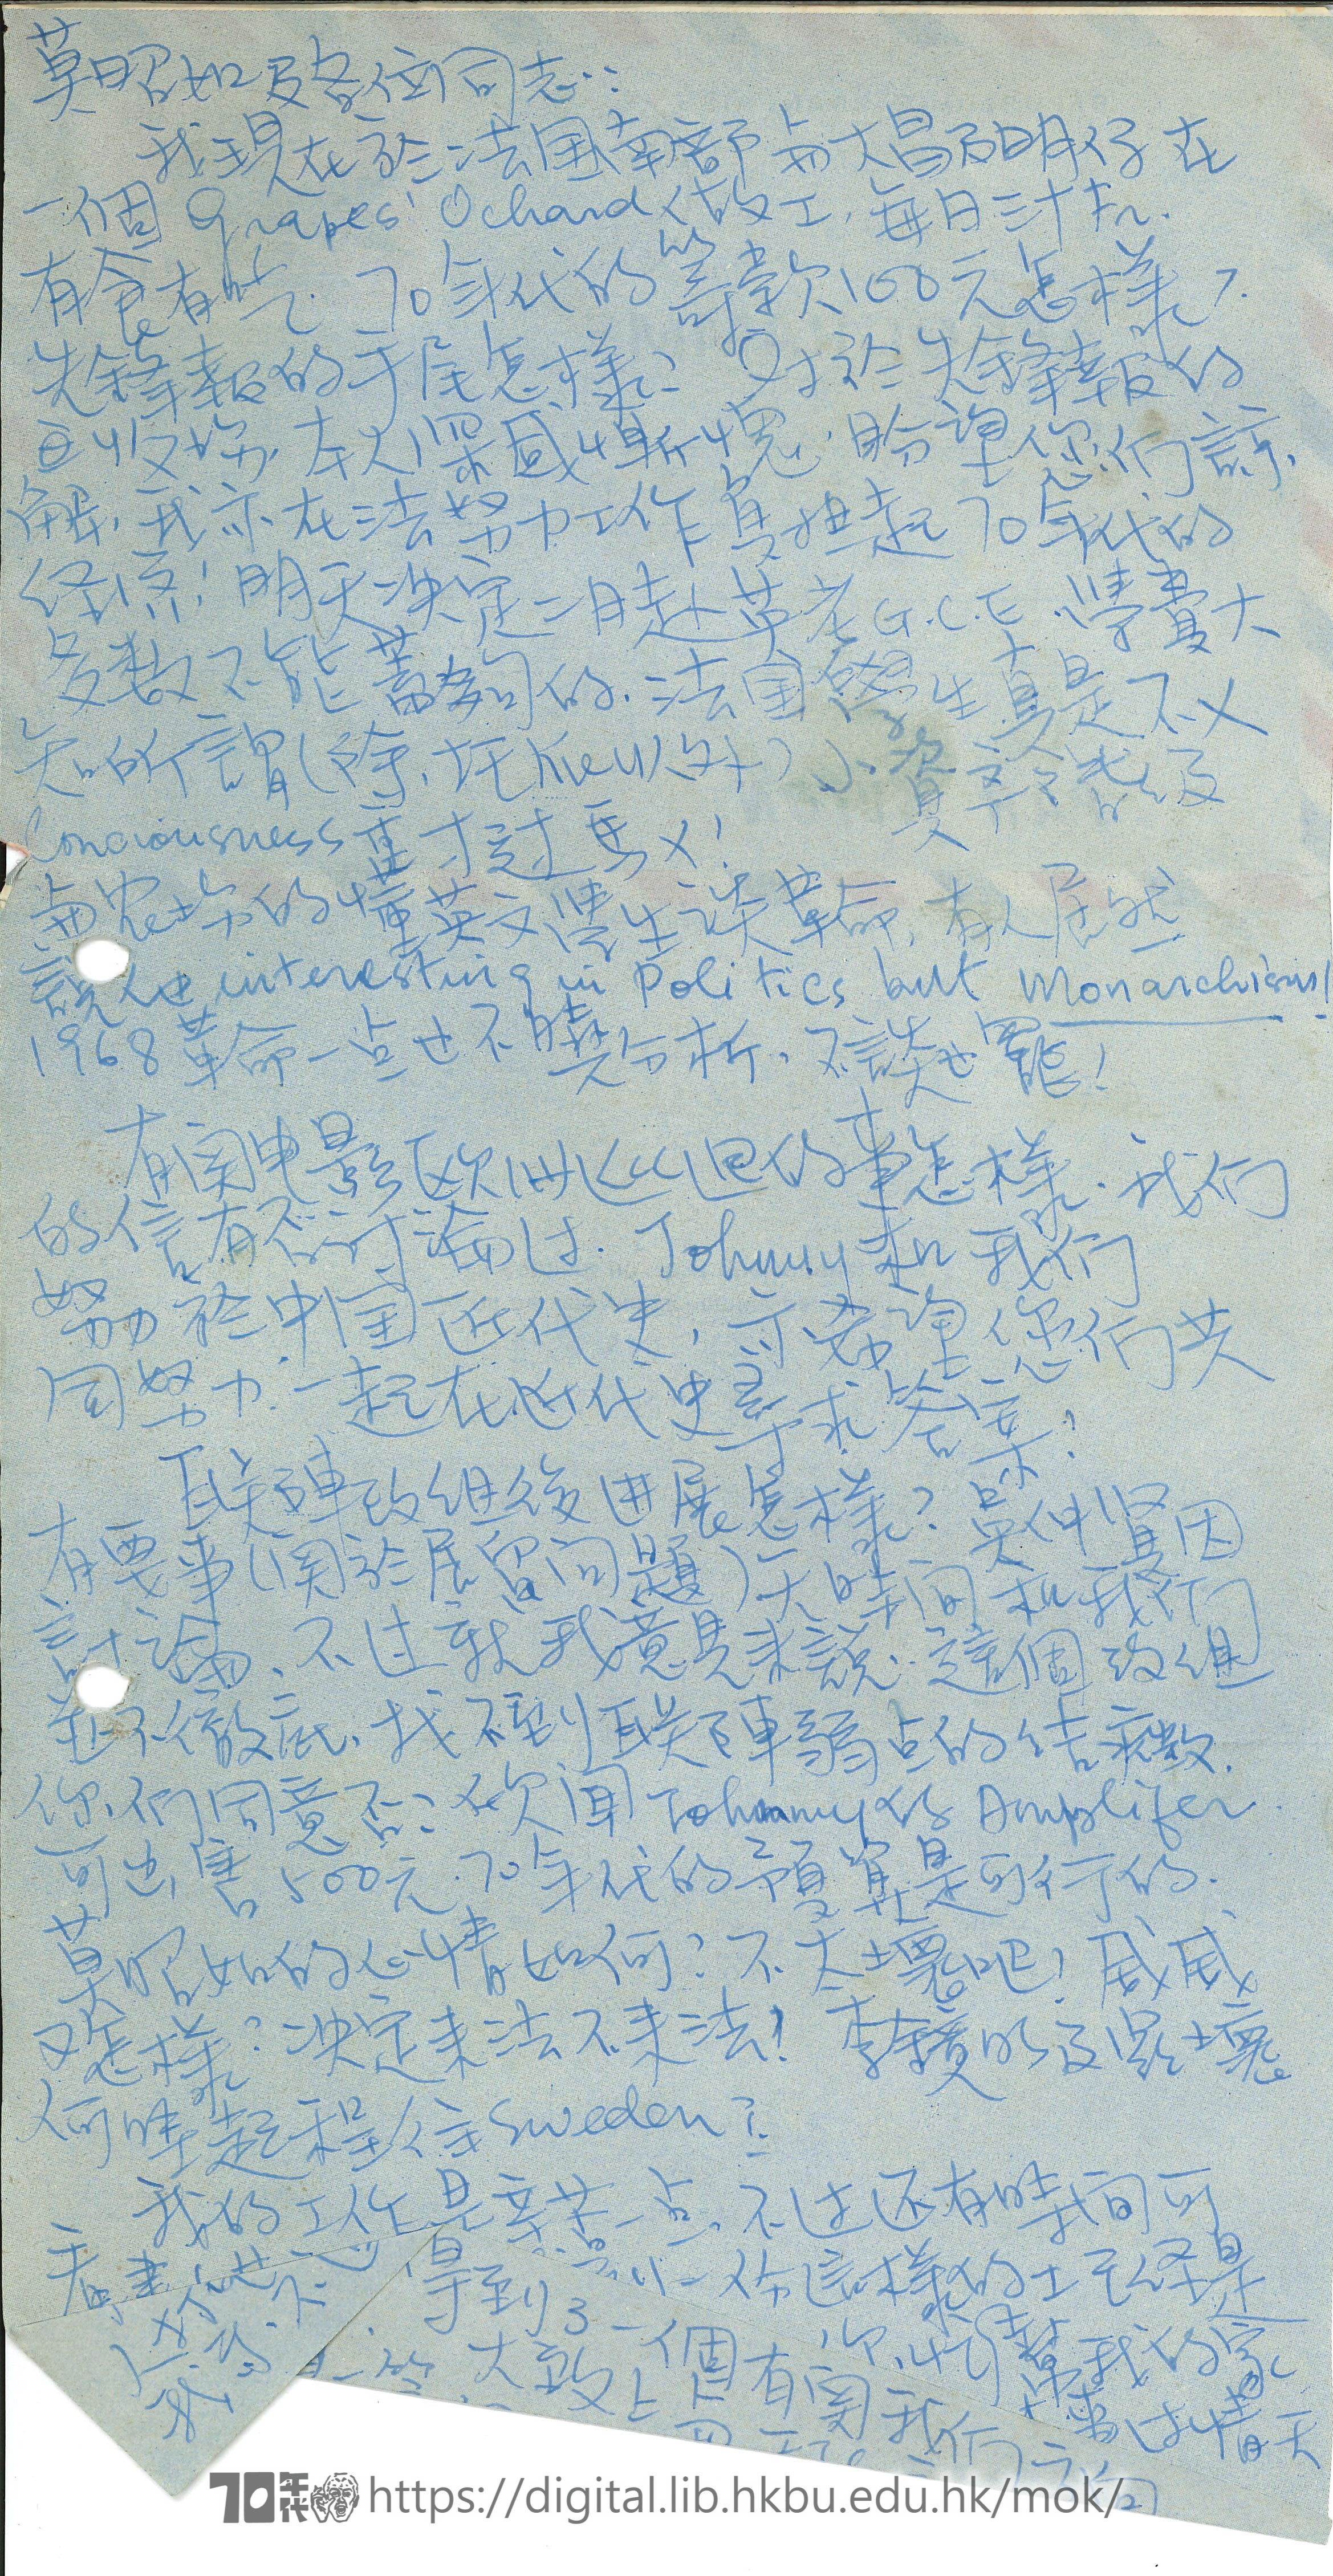   Letter fom Ng Ka-lun to Mok Chiu Yu 岑建勲 